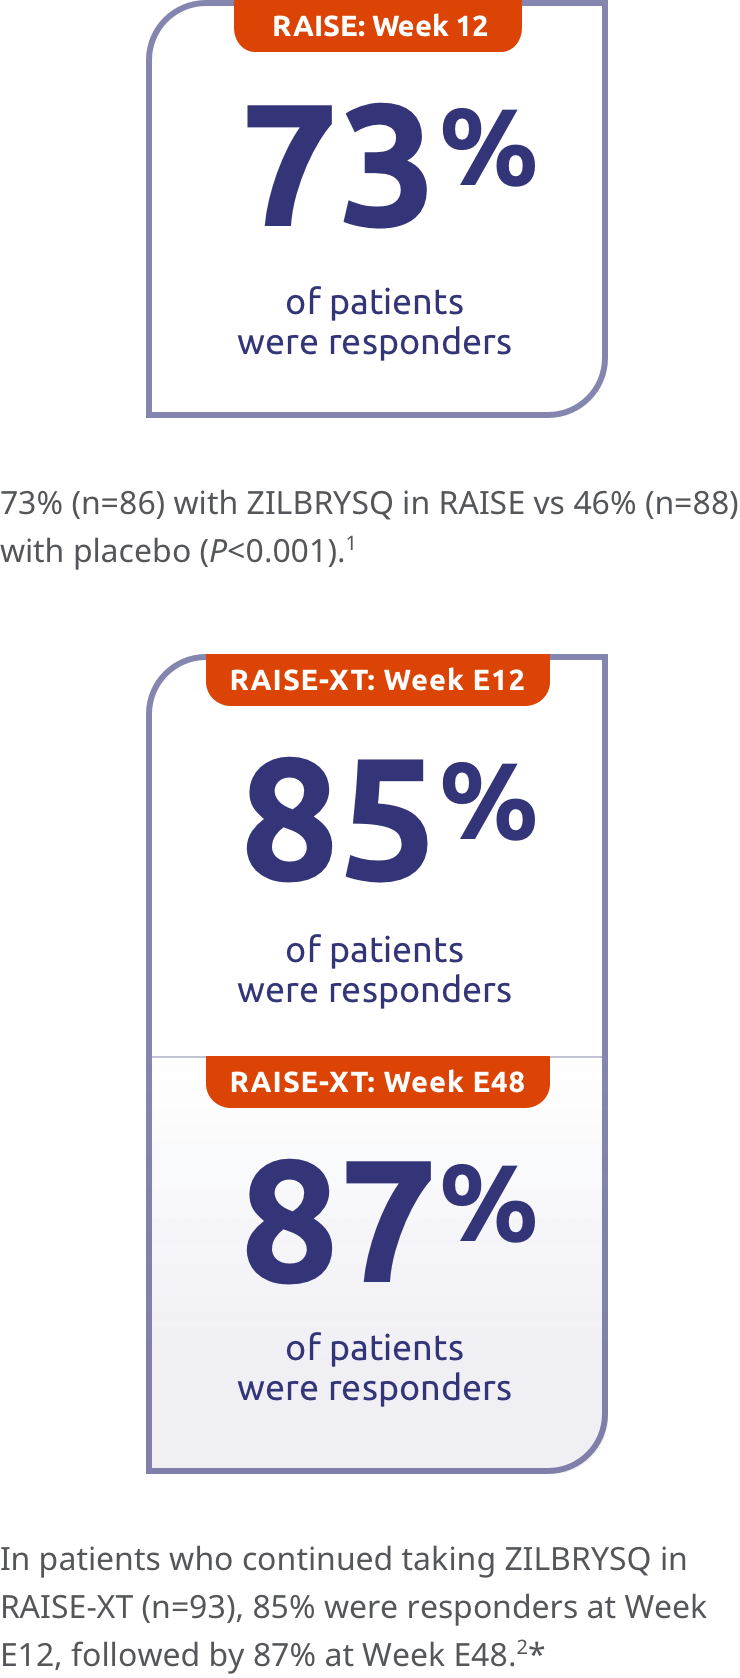 RAISE Week 12 73% of patients were MG-ADL responders. RAISE-XT: Week E12 85% of patients were MG-ADL responders. RAISE-XT: Week E48 87% of patients were MG-ADL responders.